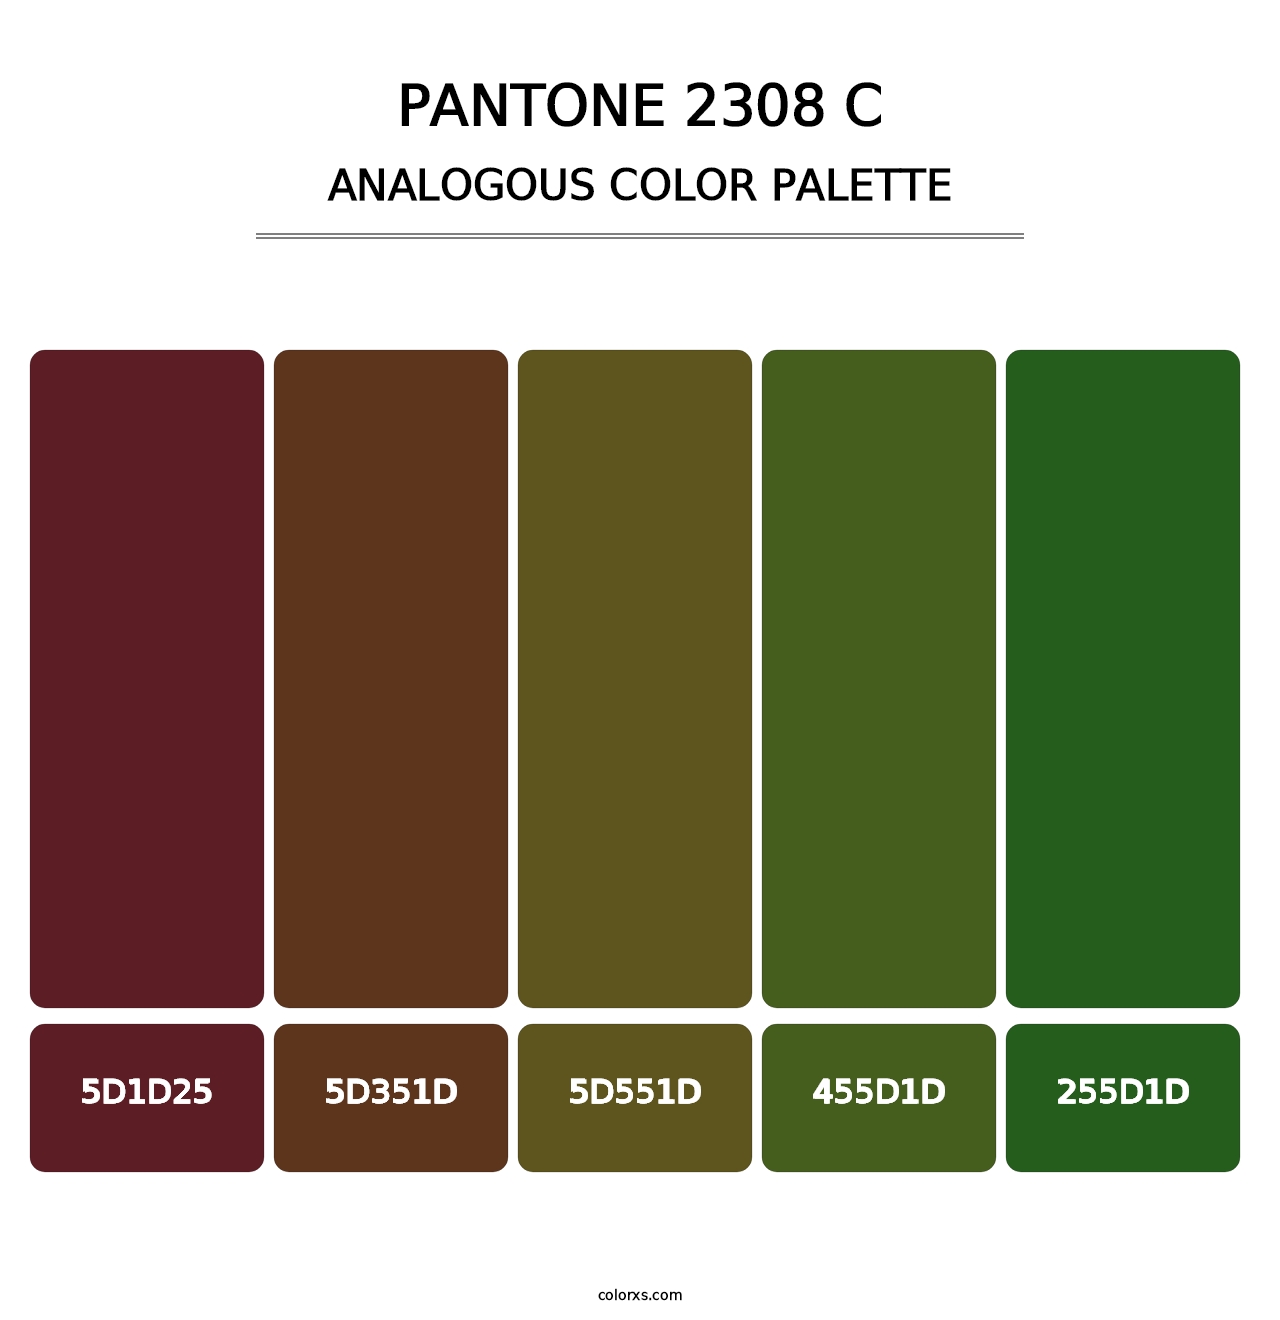 PANTONE 2308 C - Analogous Color Palette